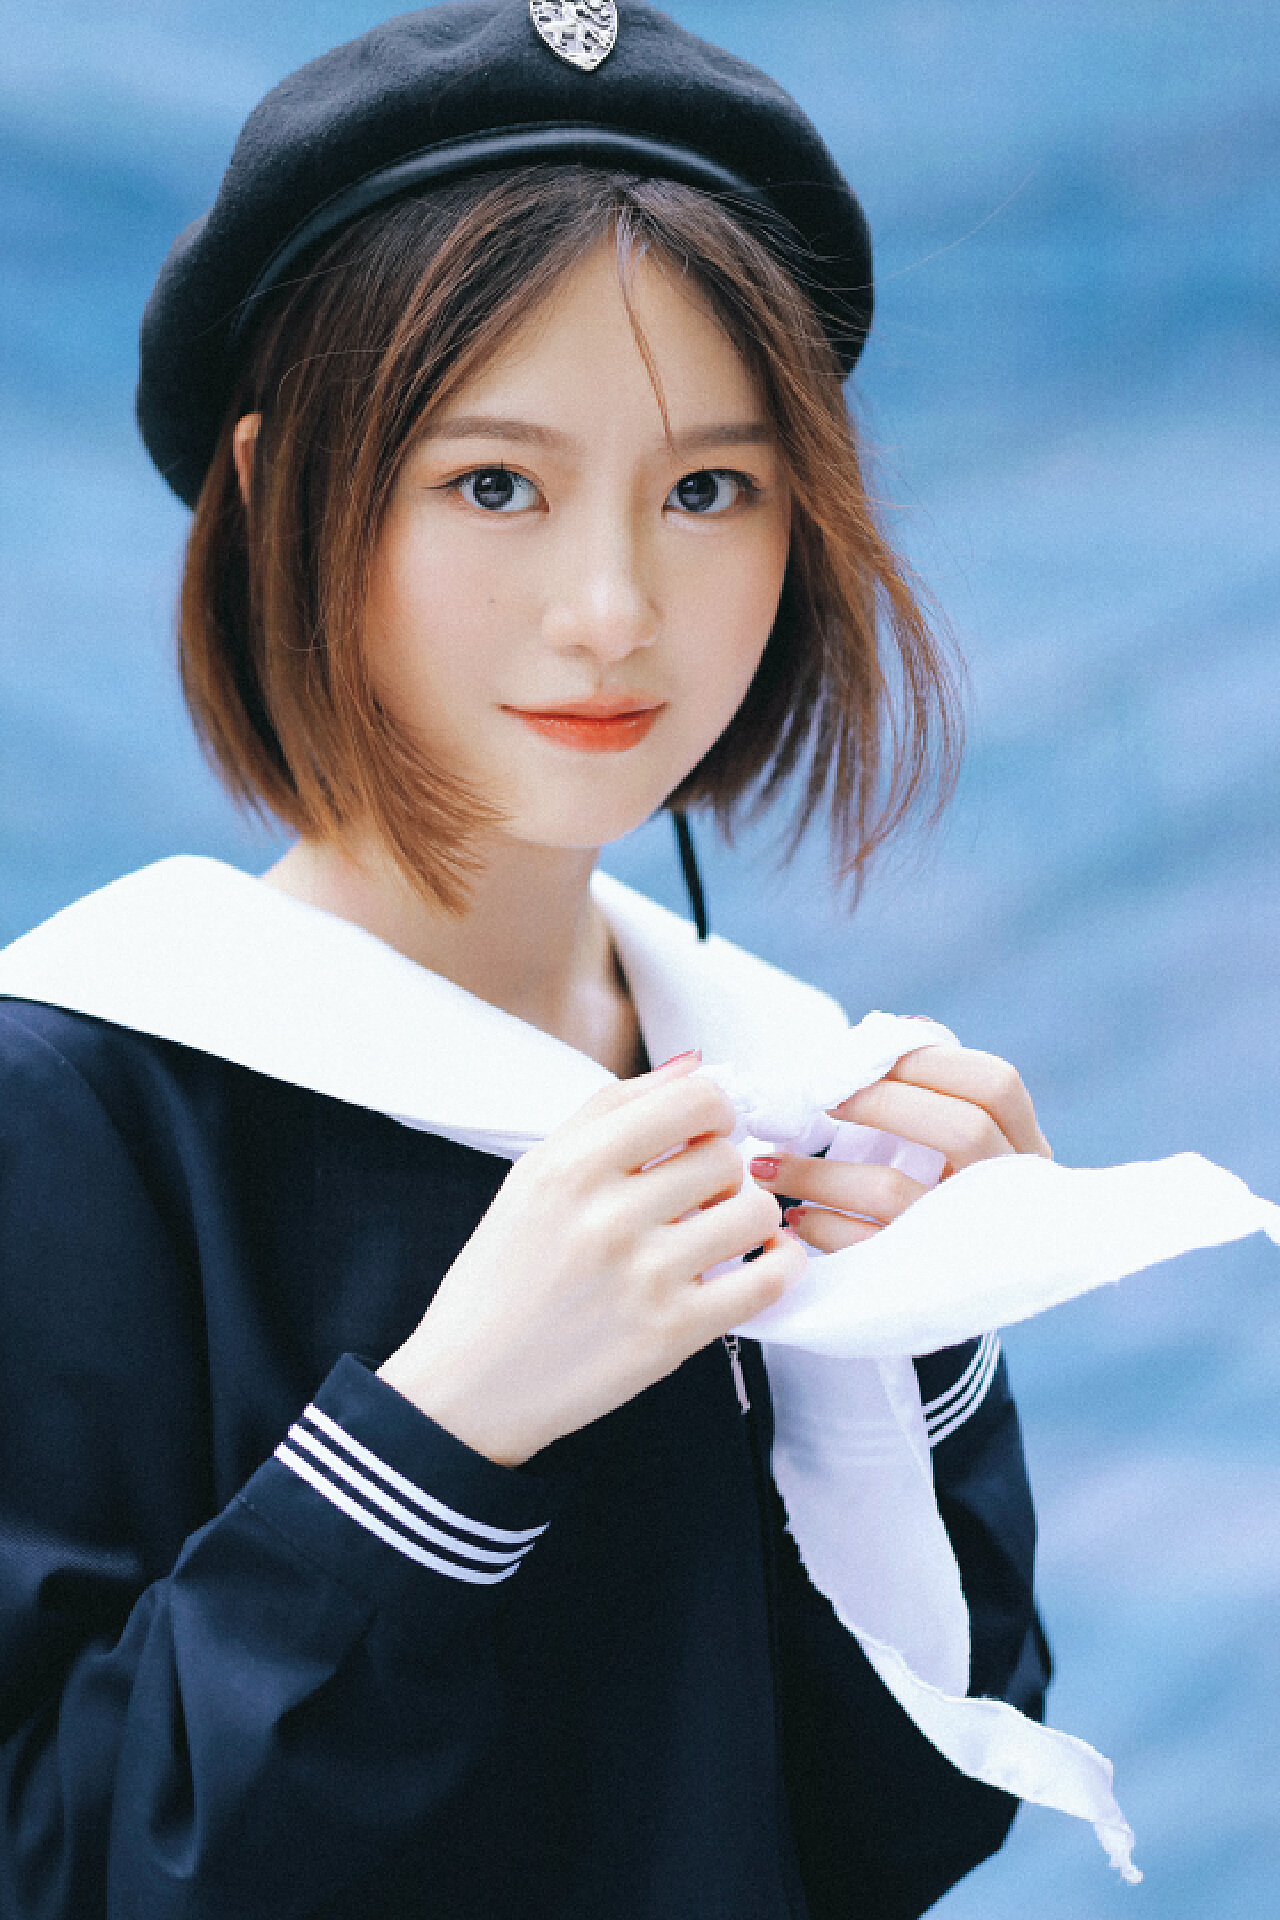 日系海军制服美女性感写真高清电脑桌面壁纸_桌面壁纸_mm4000图片大全